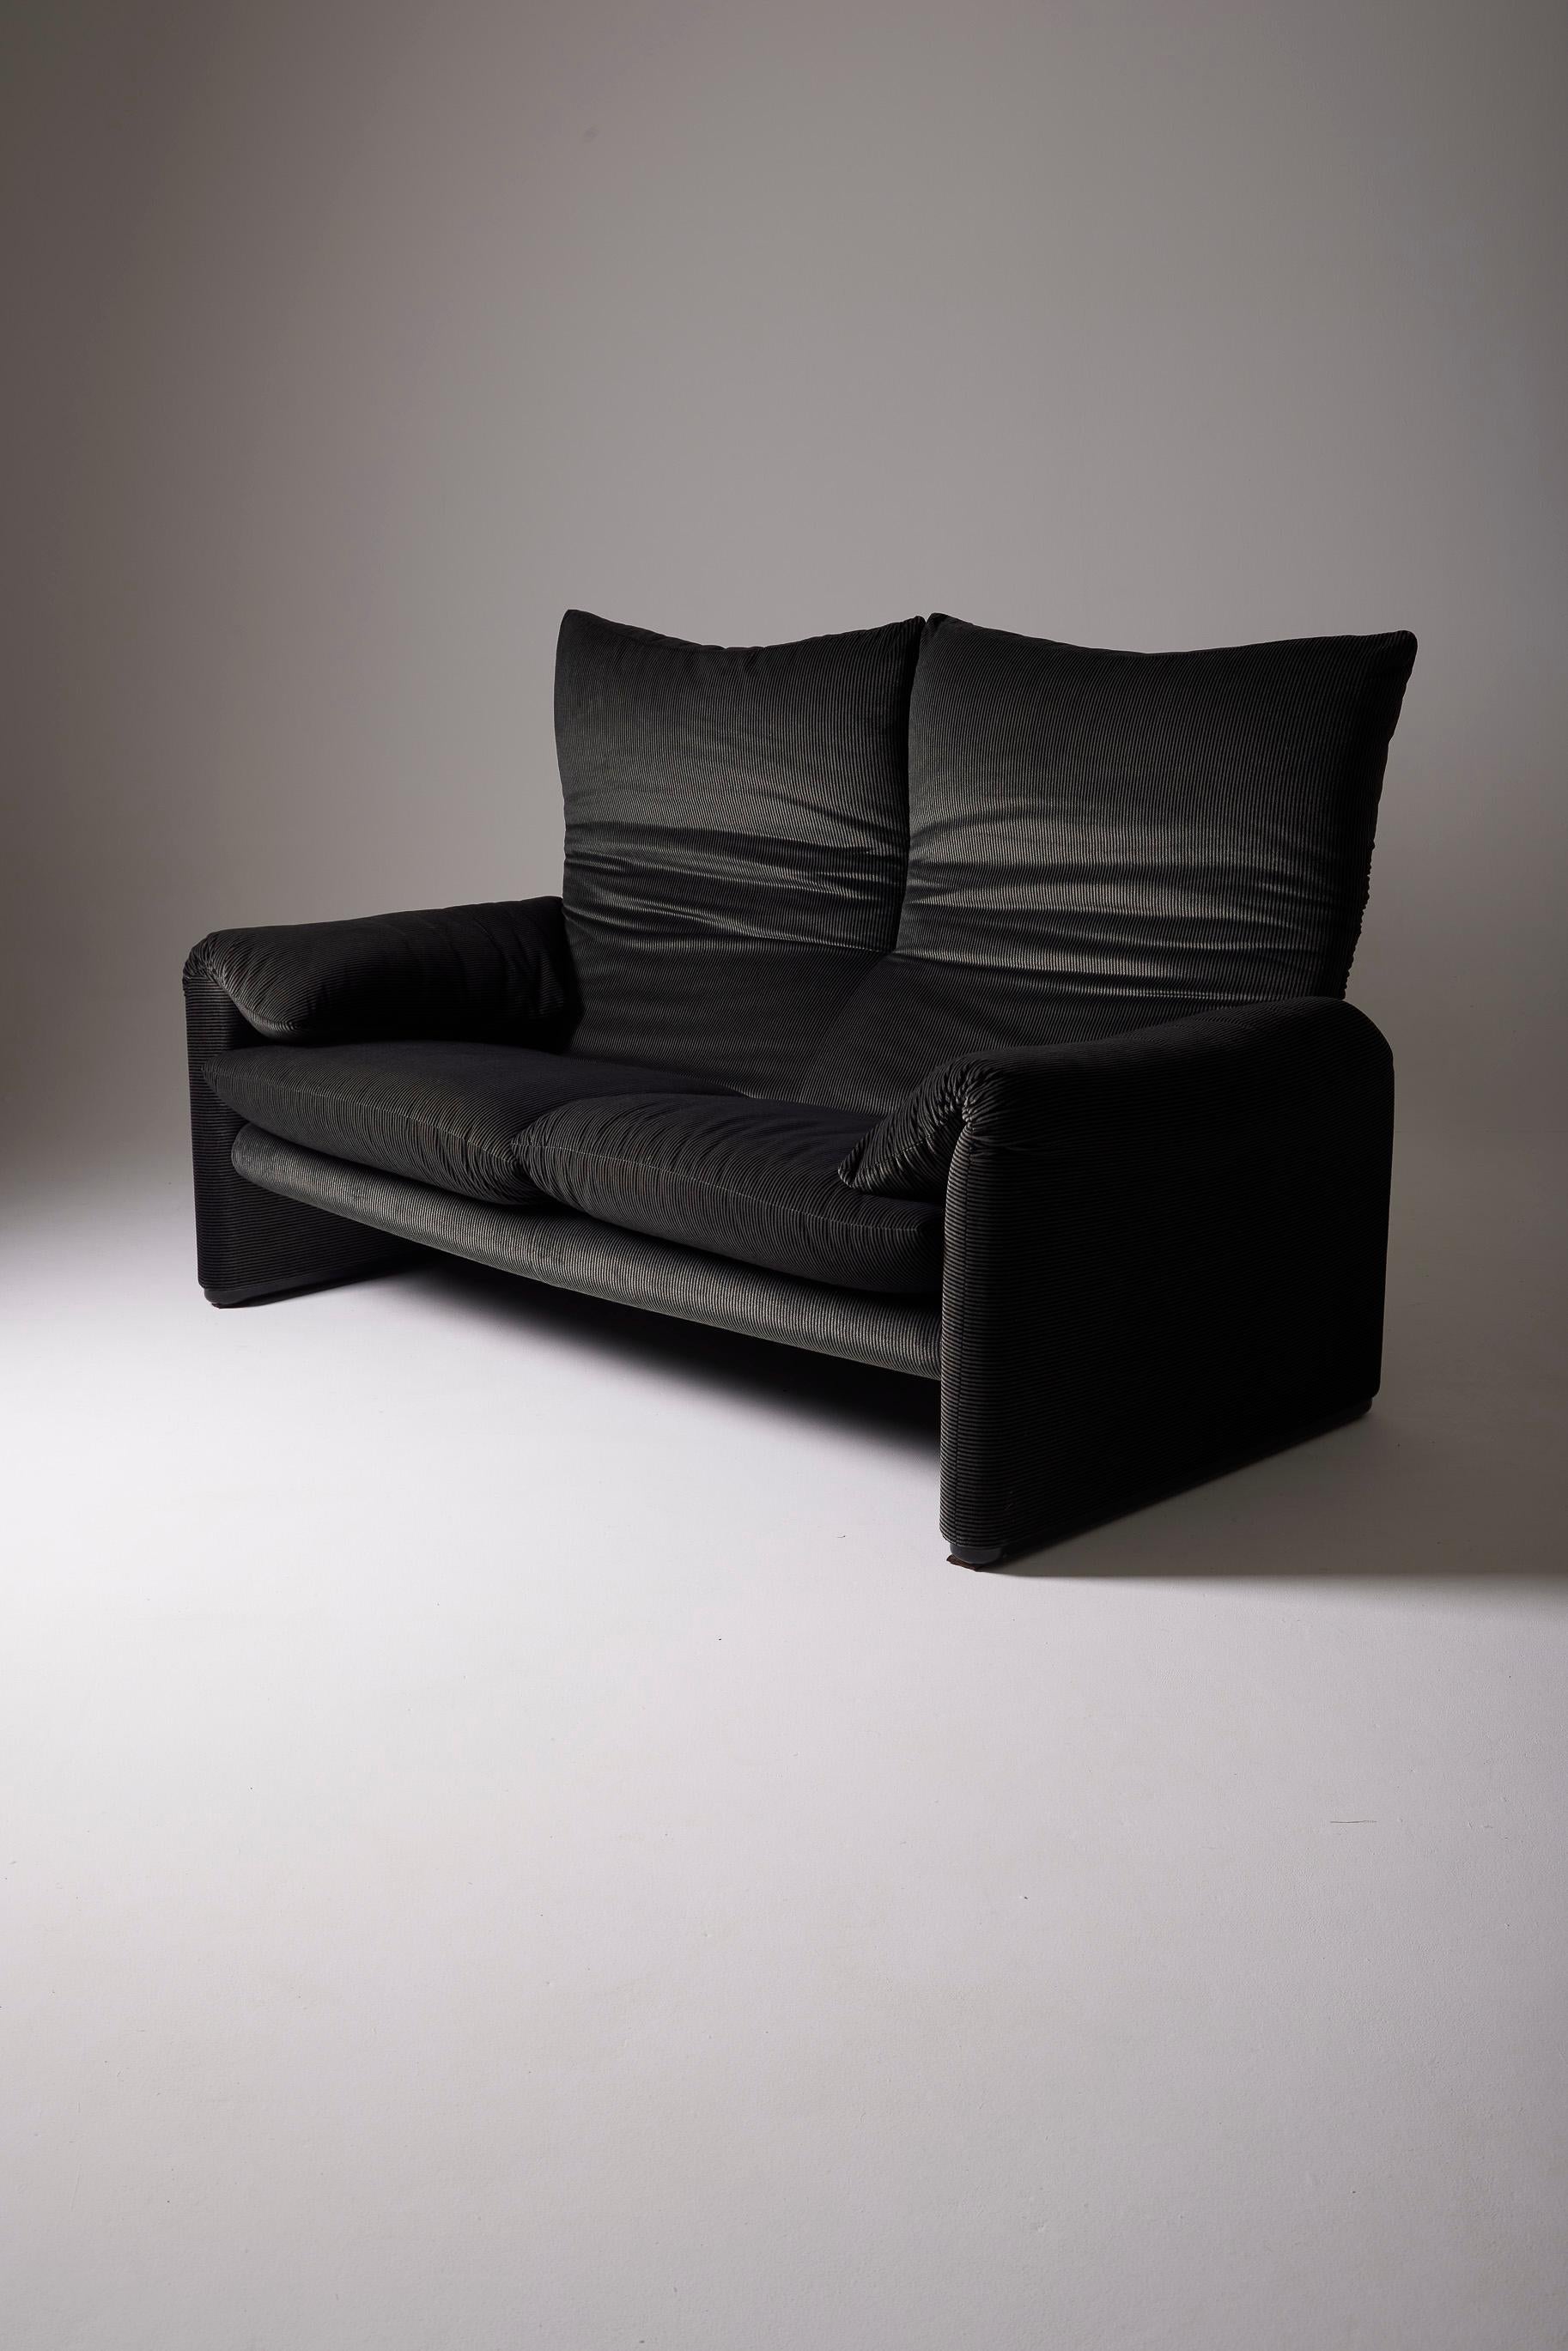 20th Century Maralunga Sofa by Vico Magistretti For Sale